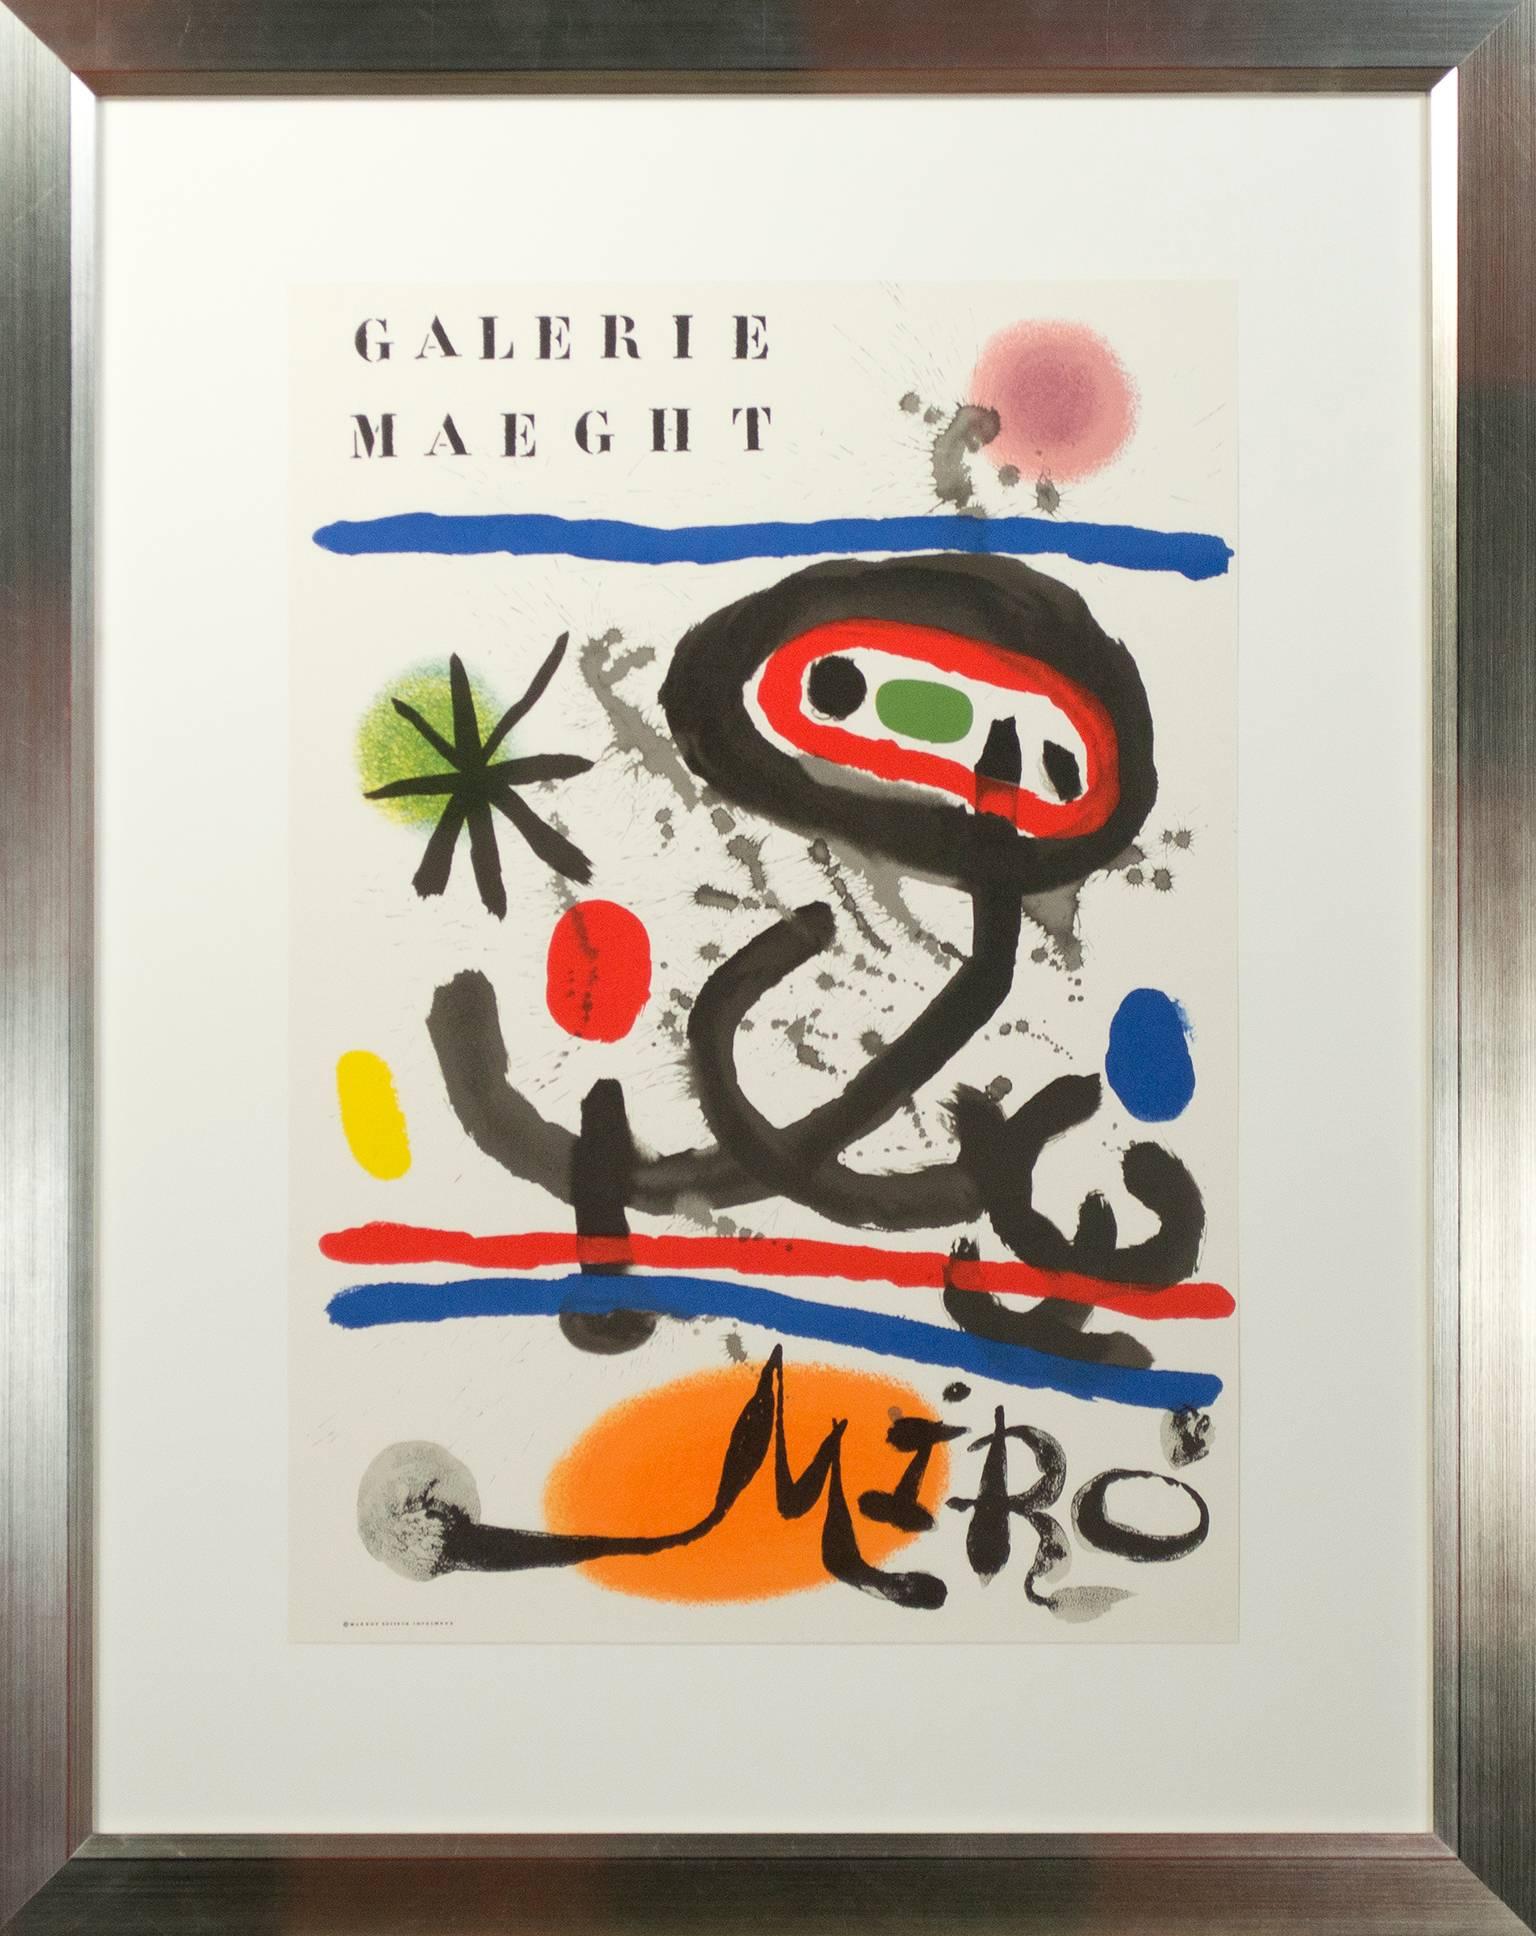 « Galerie Maeght Miro Maqght Editeur Imprimeur », une lithographie originale de Joan Miro - Surréalisme Print par Joan Miró